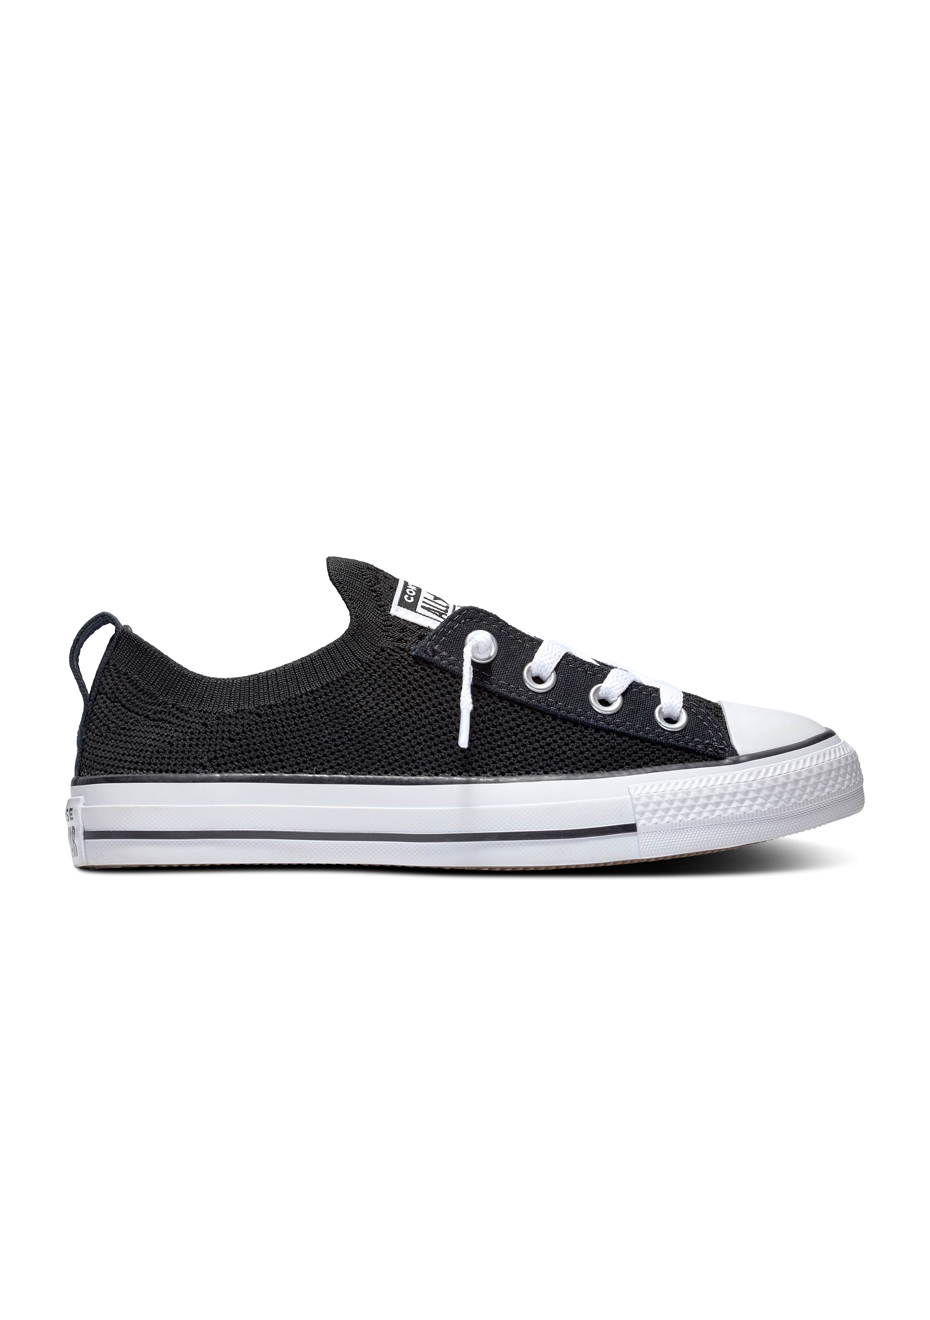 black converse shoes nz